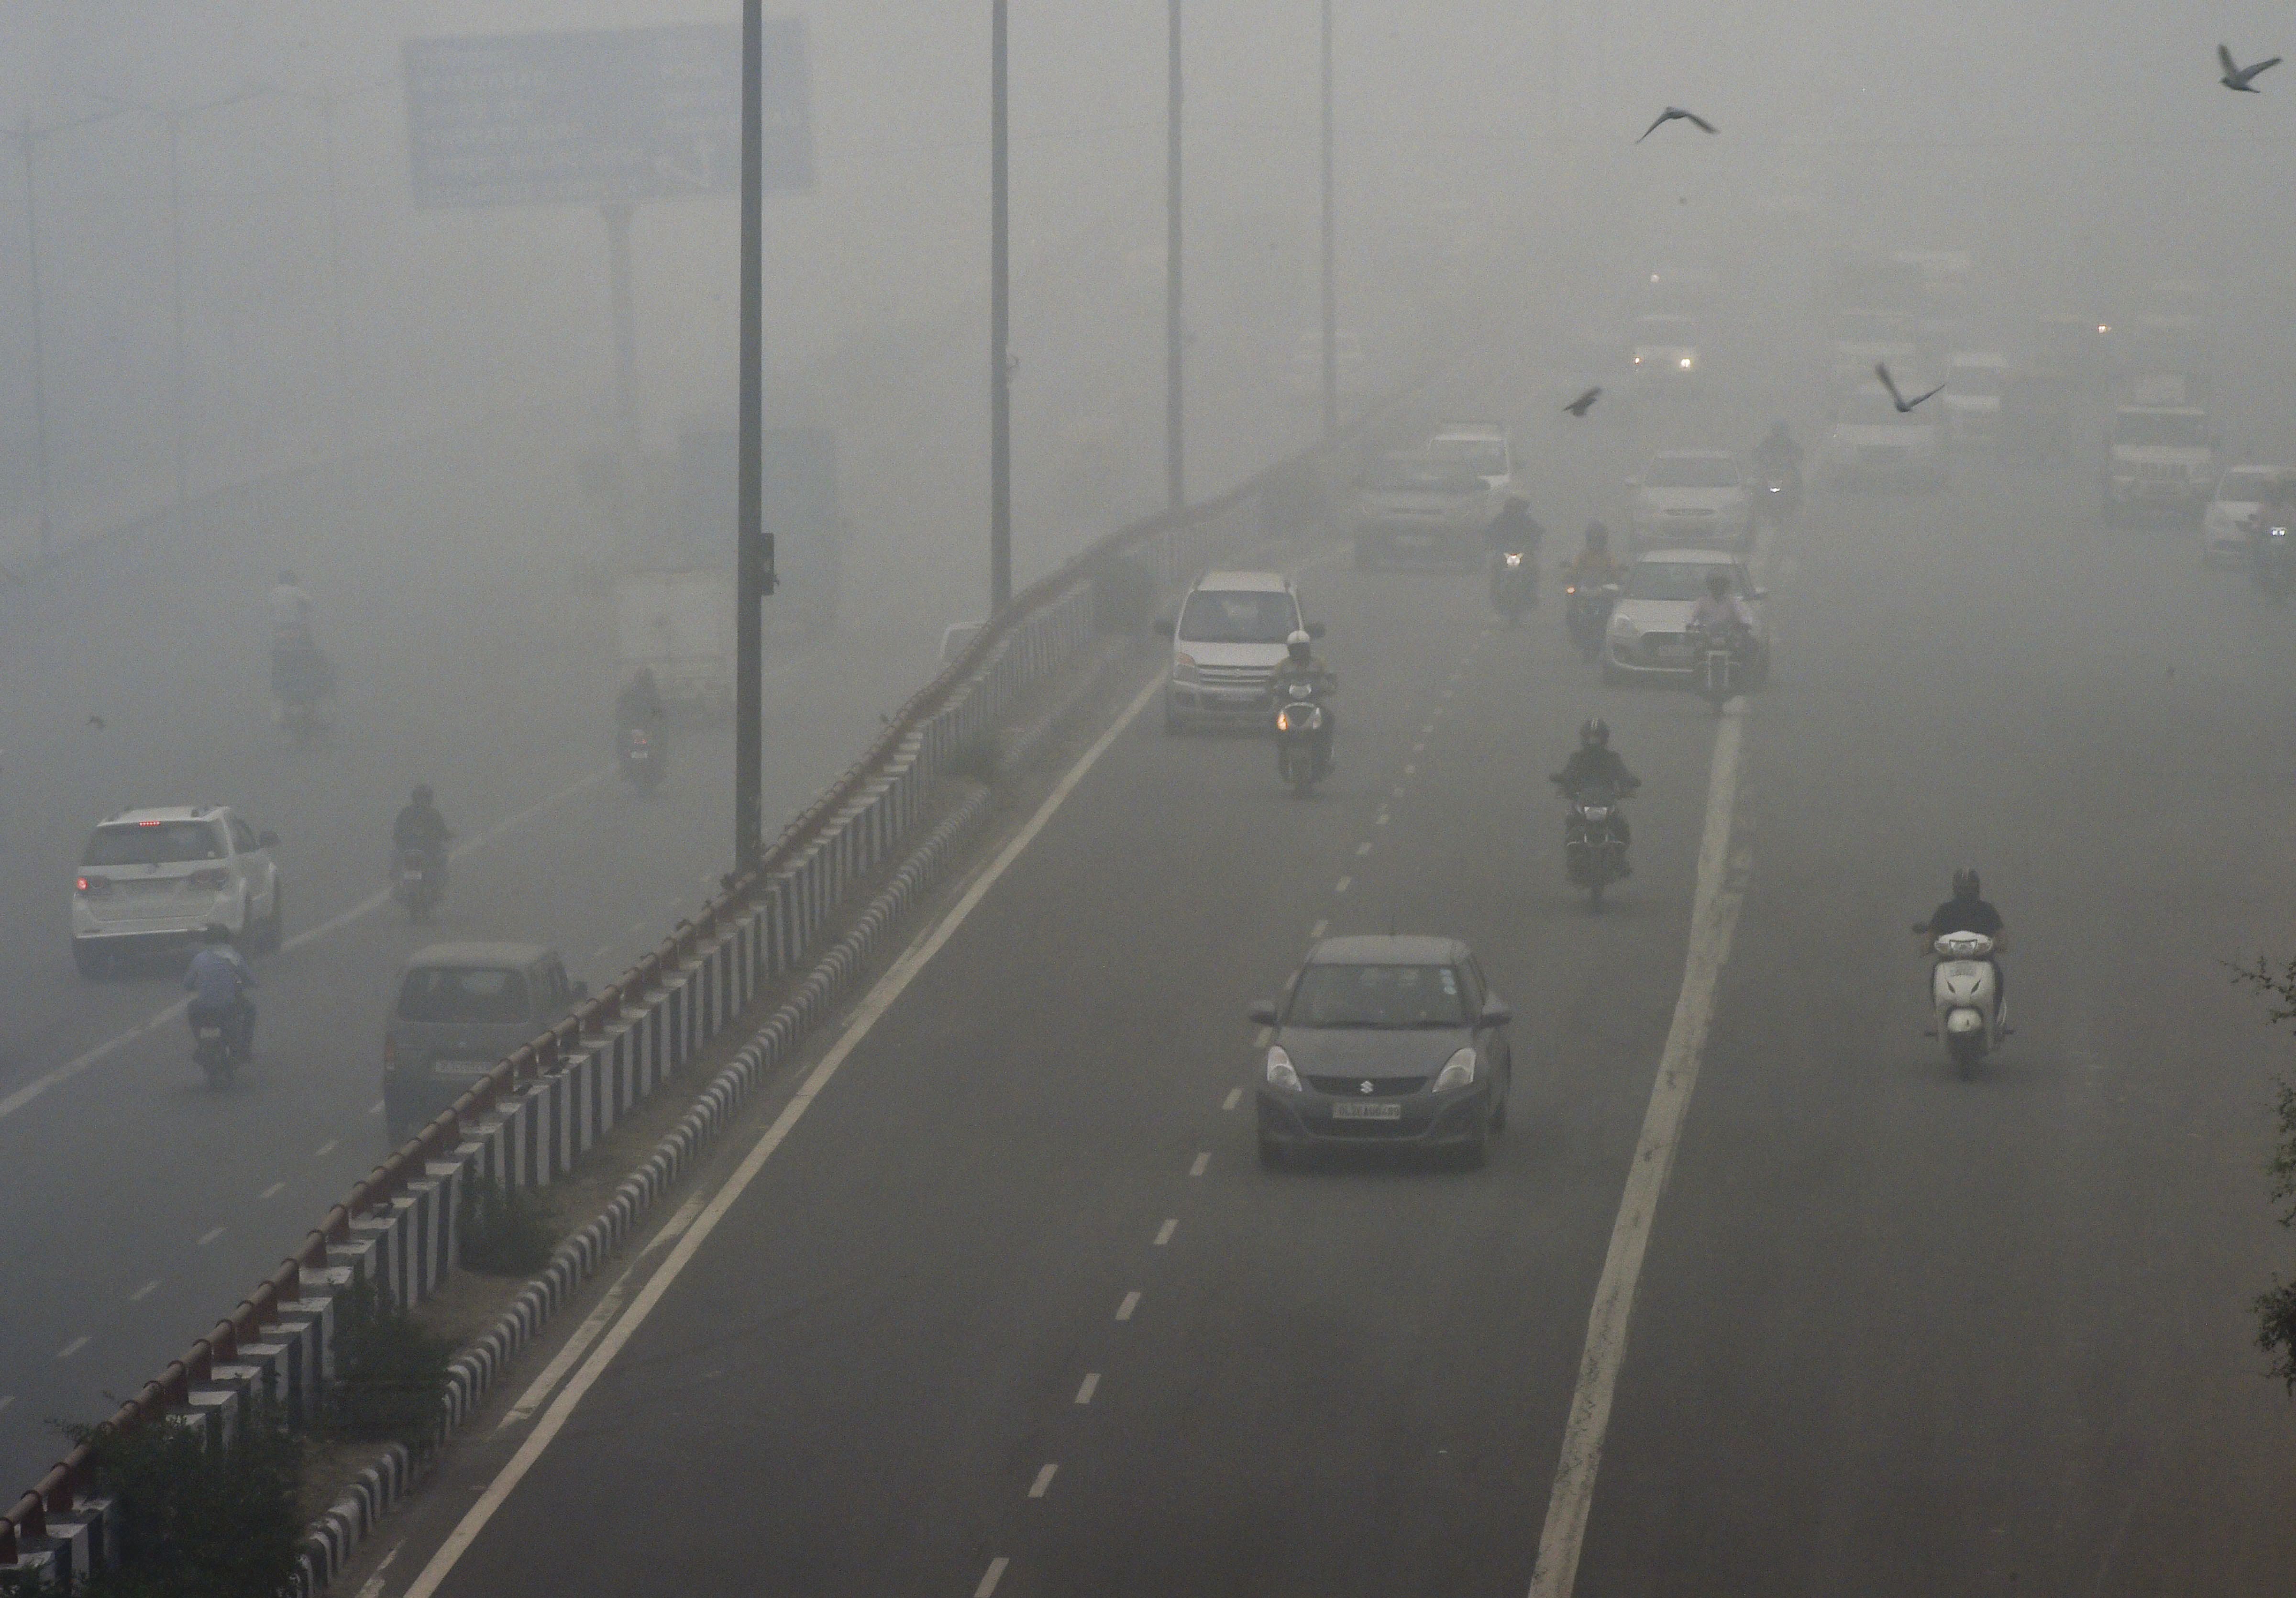 Vehicles ply on a road amid heavy smog, in New Delhi, Sunday, Novembe 3, 2019.